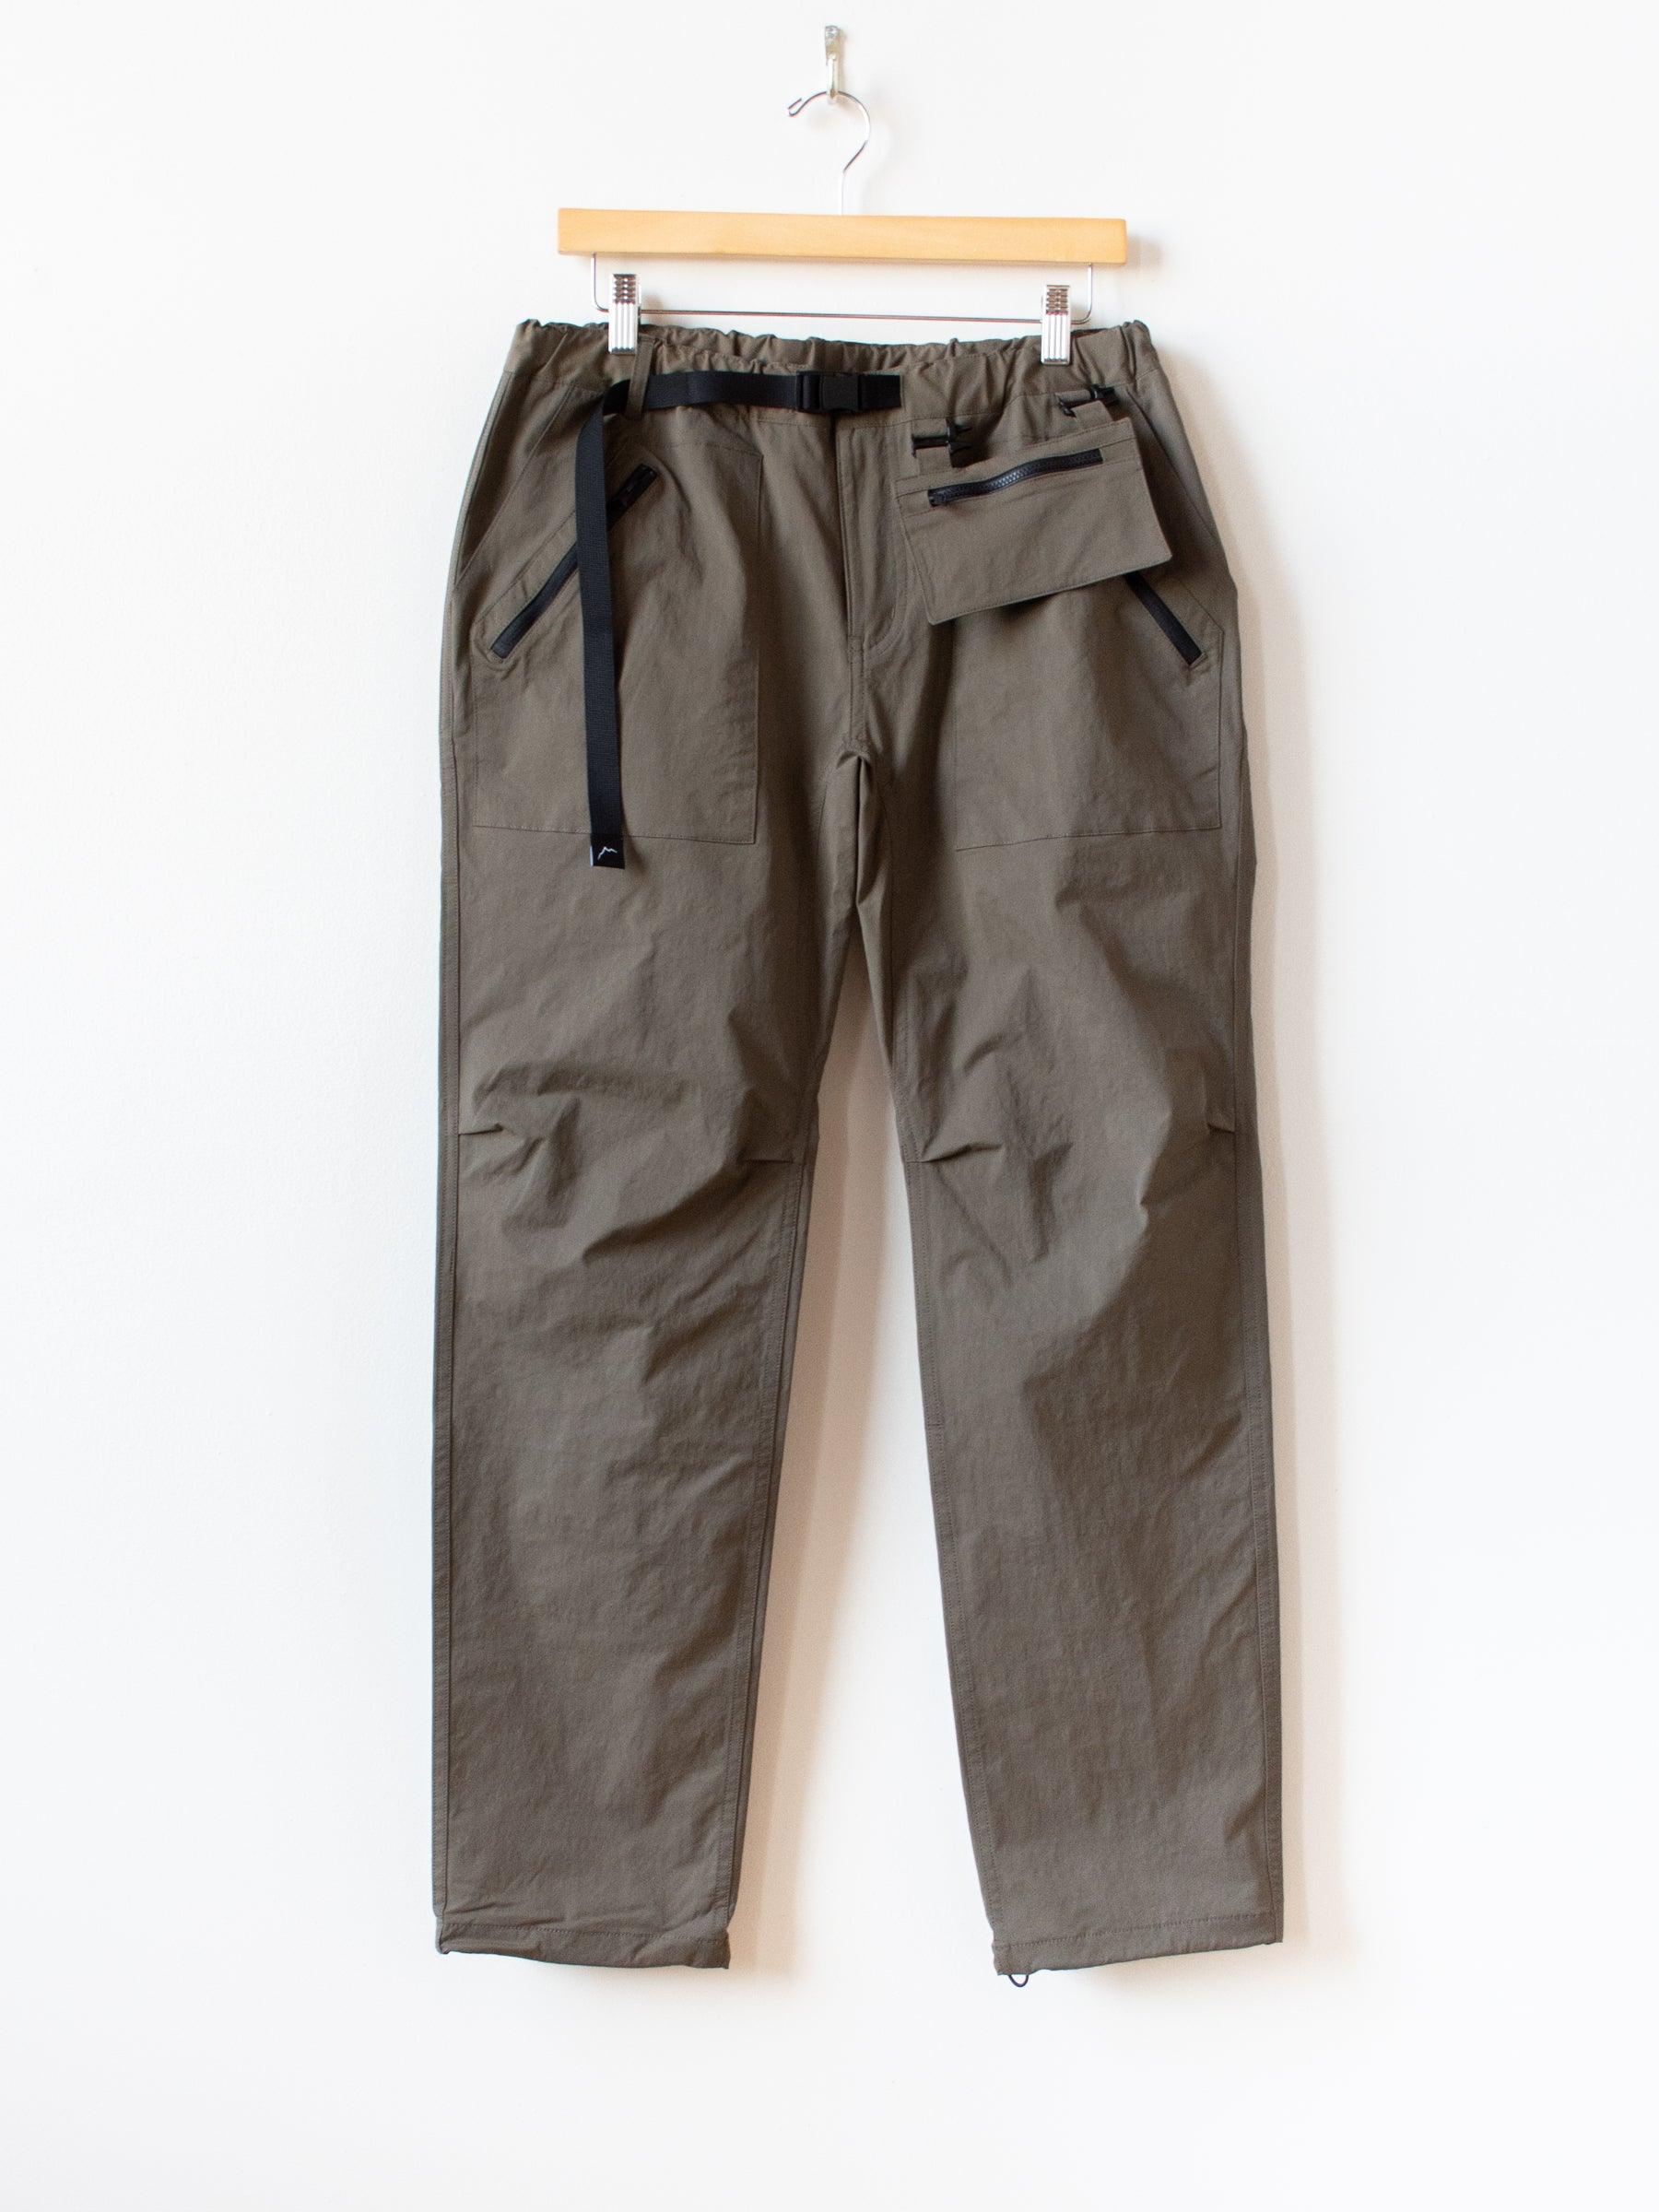 Namu Shop - CAYL Mountain Pants 2 - Brown Khaki